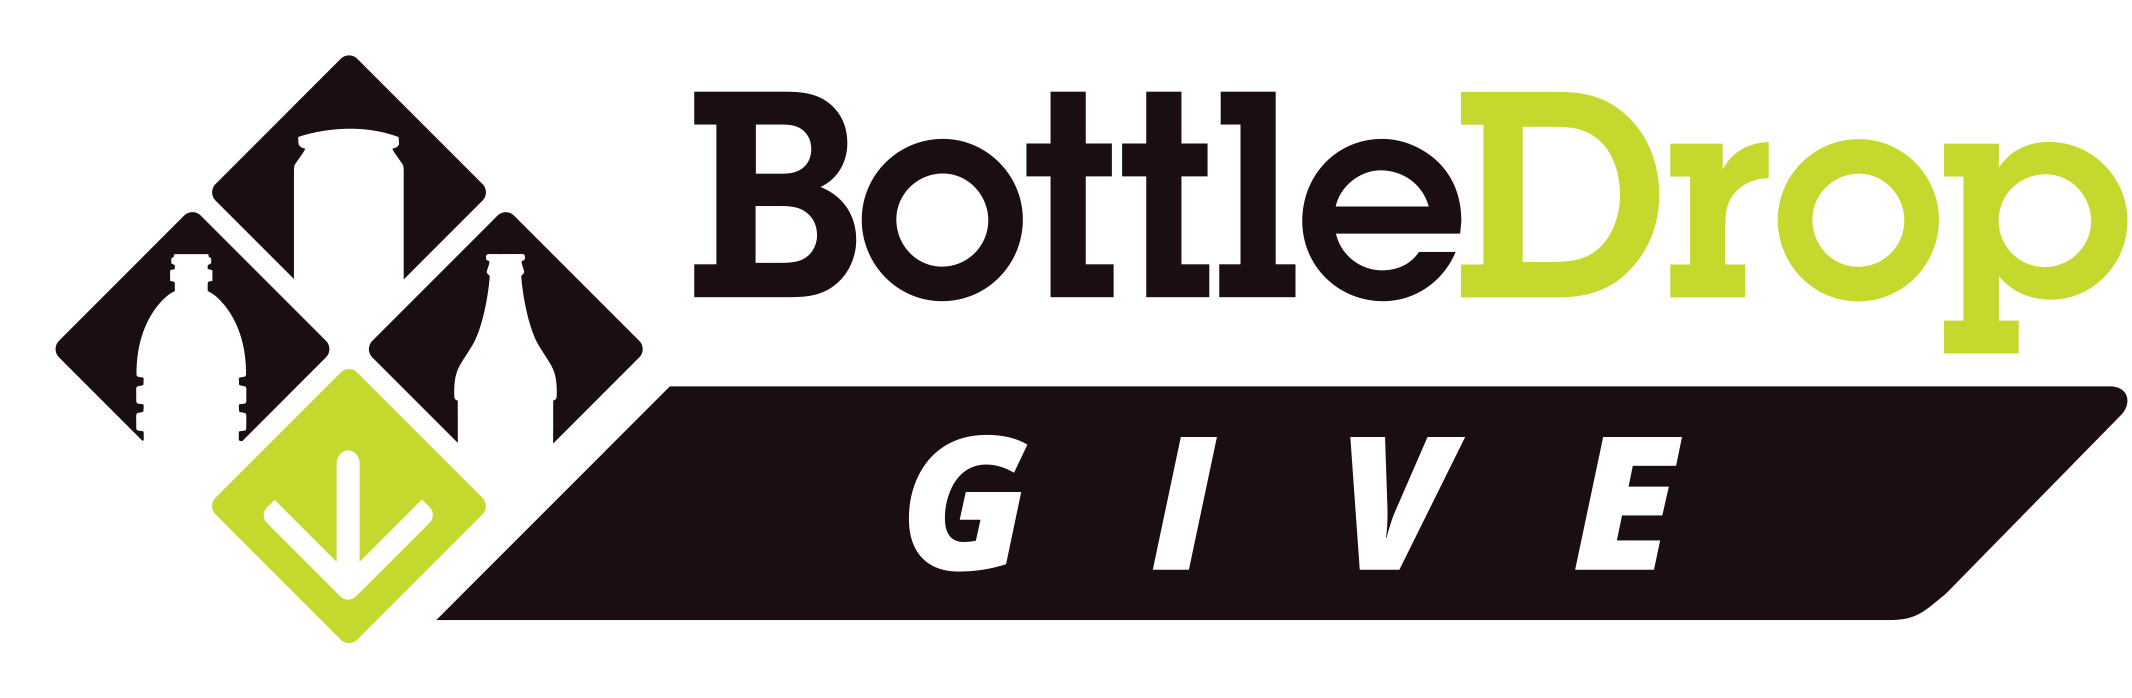 Image Result For Bottle Drop Oregon Logo - Oregon Bottle Drop Logo Clipart (2132x698), Png Download